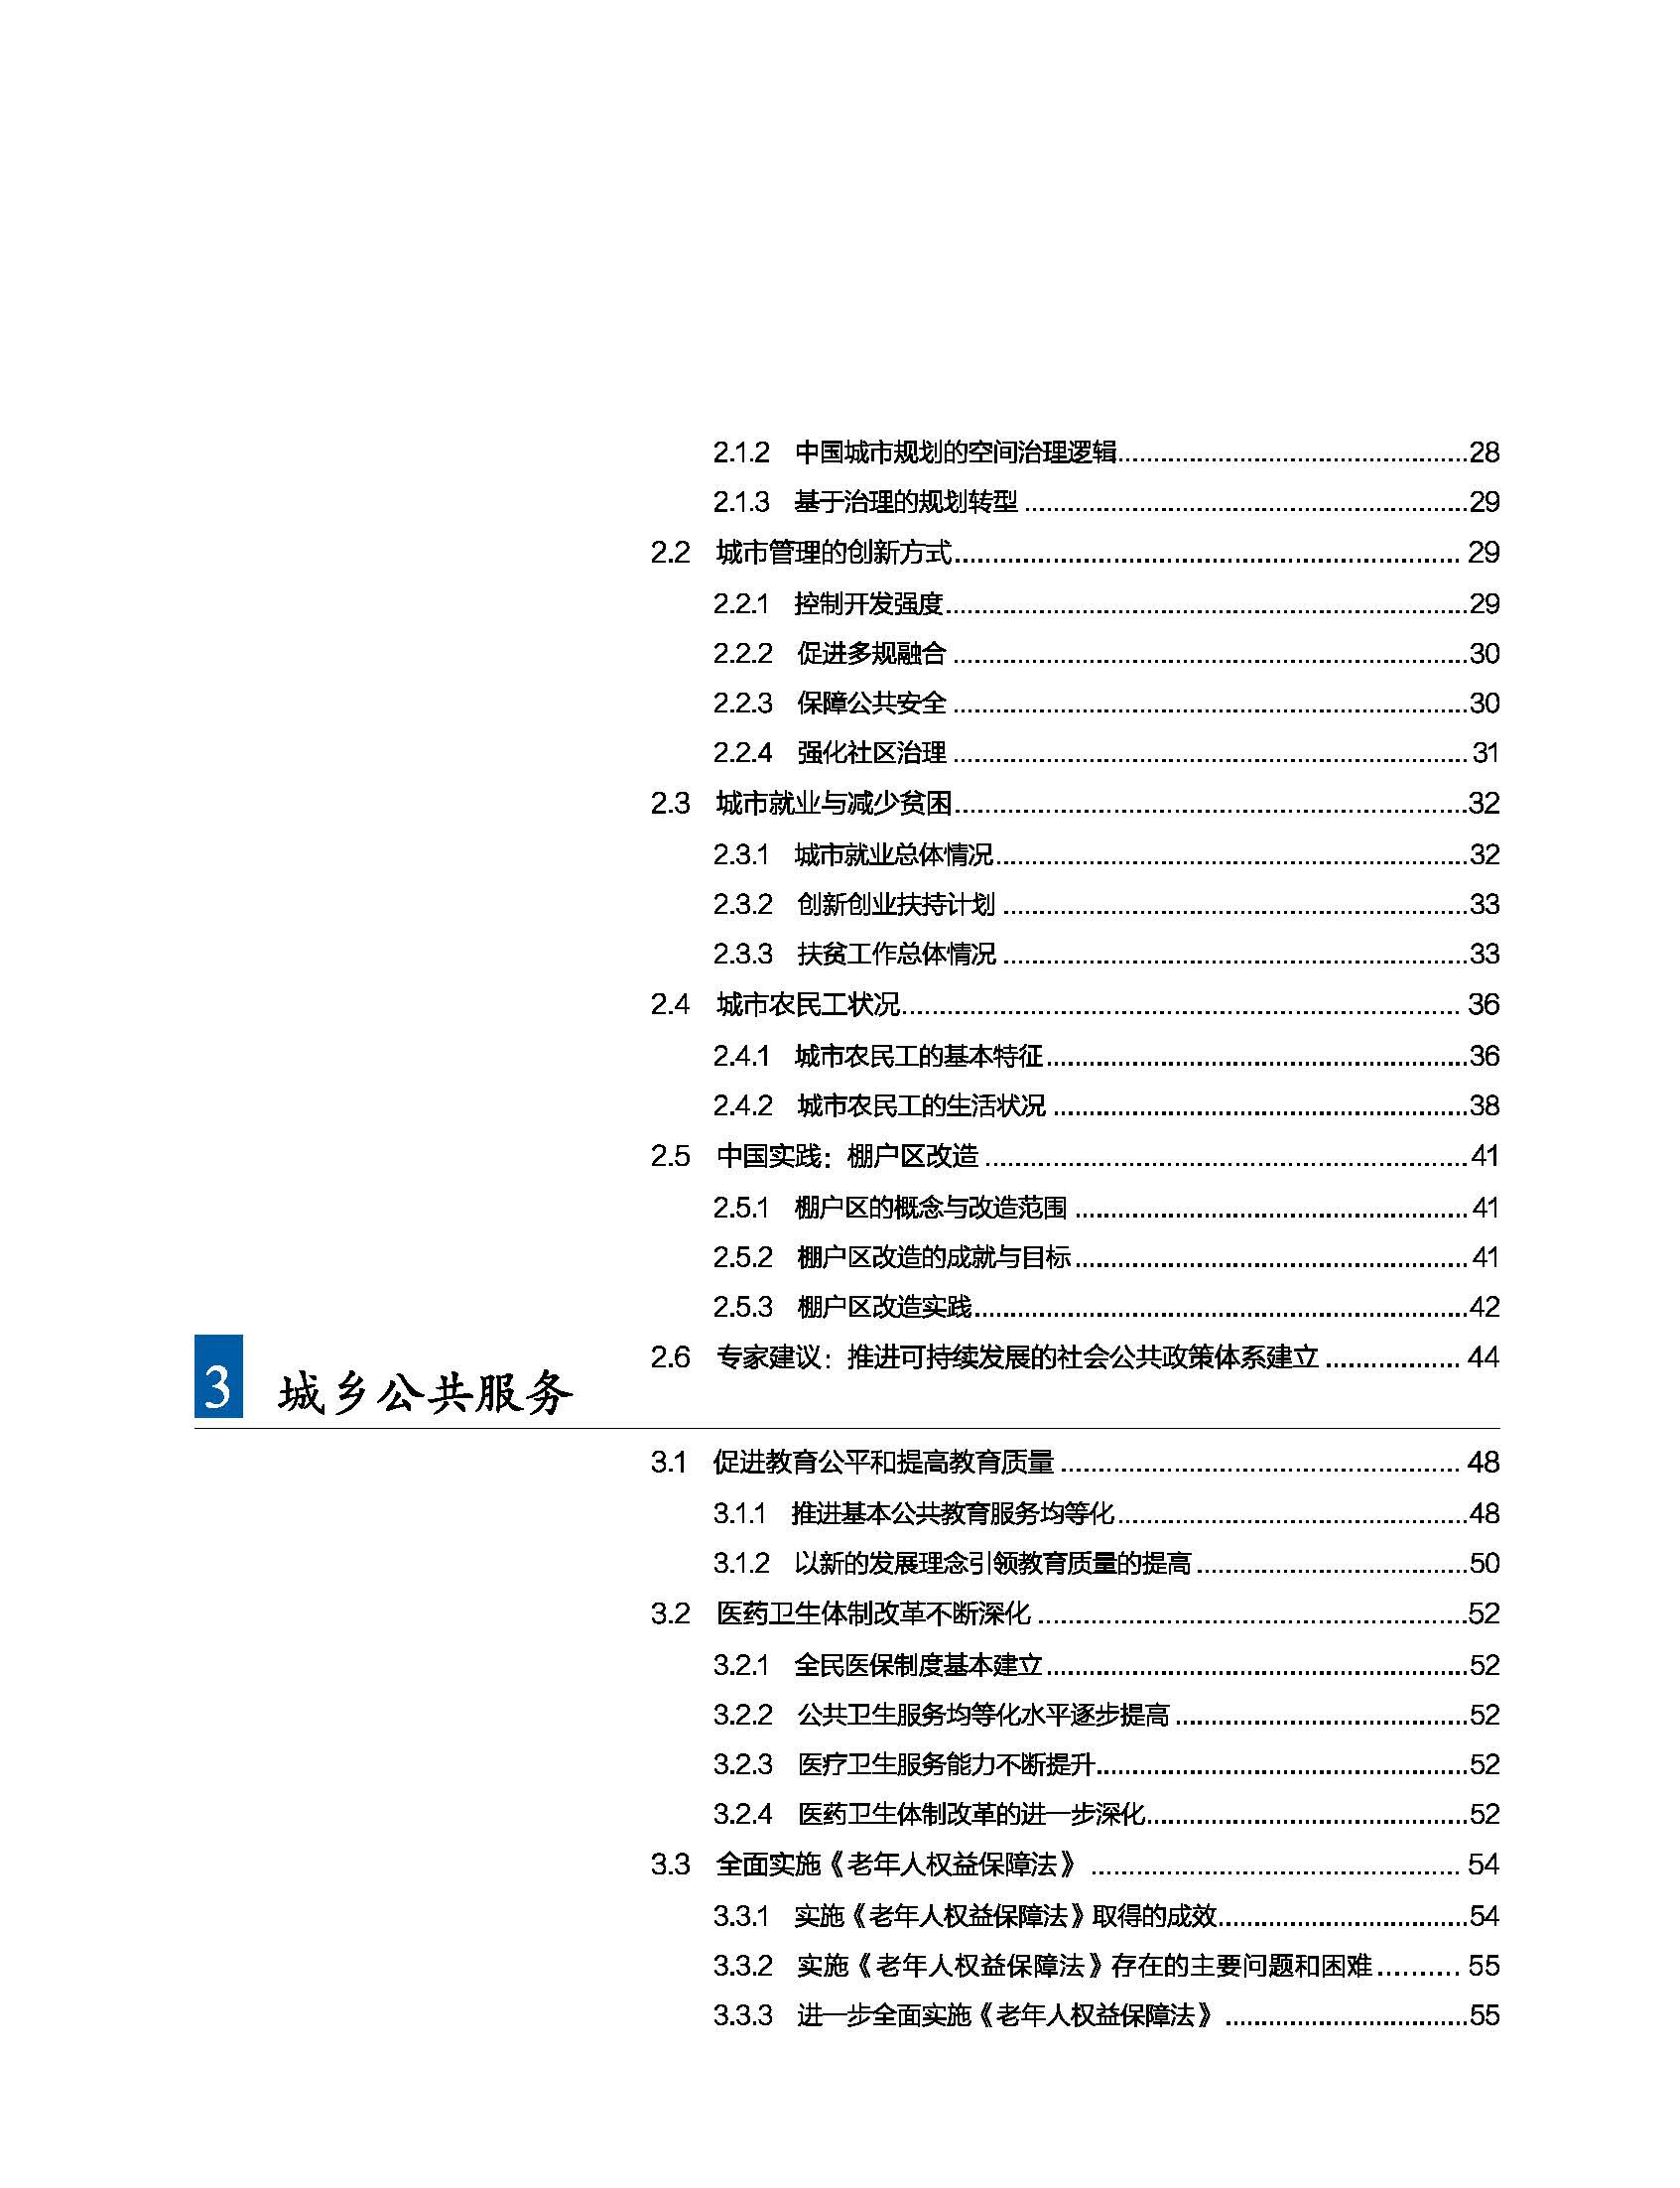 状况报告2016-2017中文 9.jpg